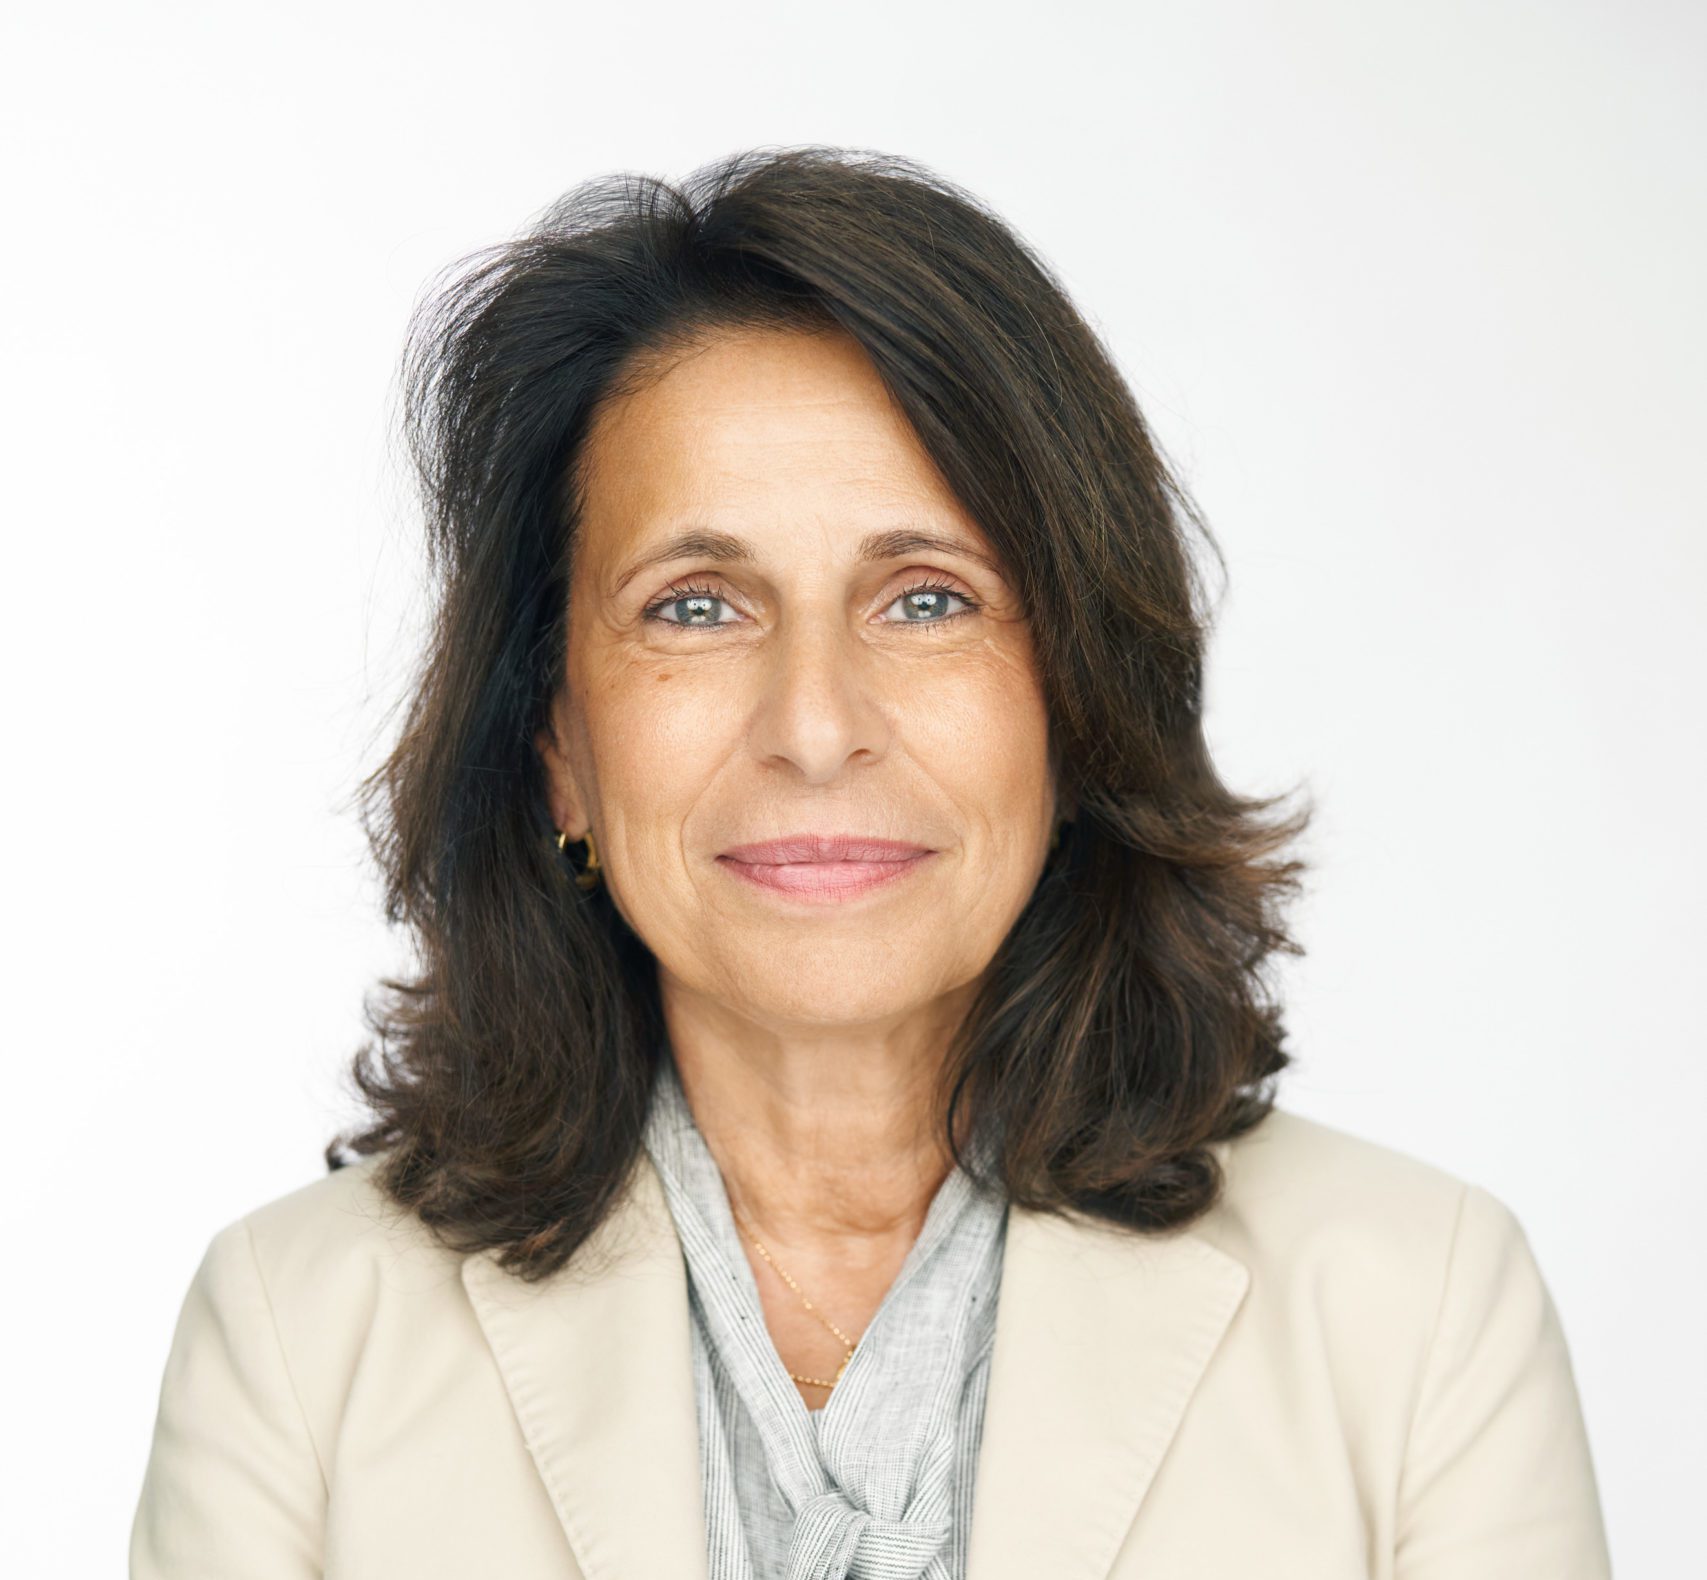 Lorella Di Donato, PhD